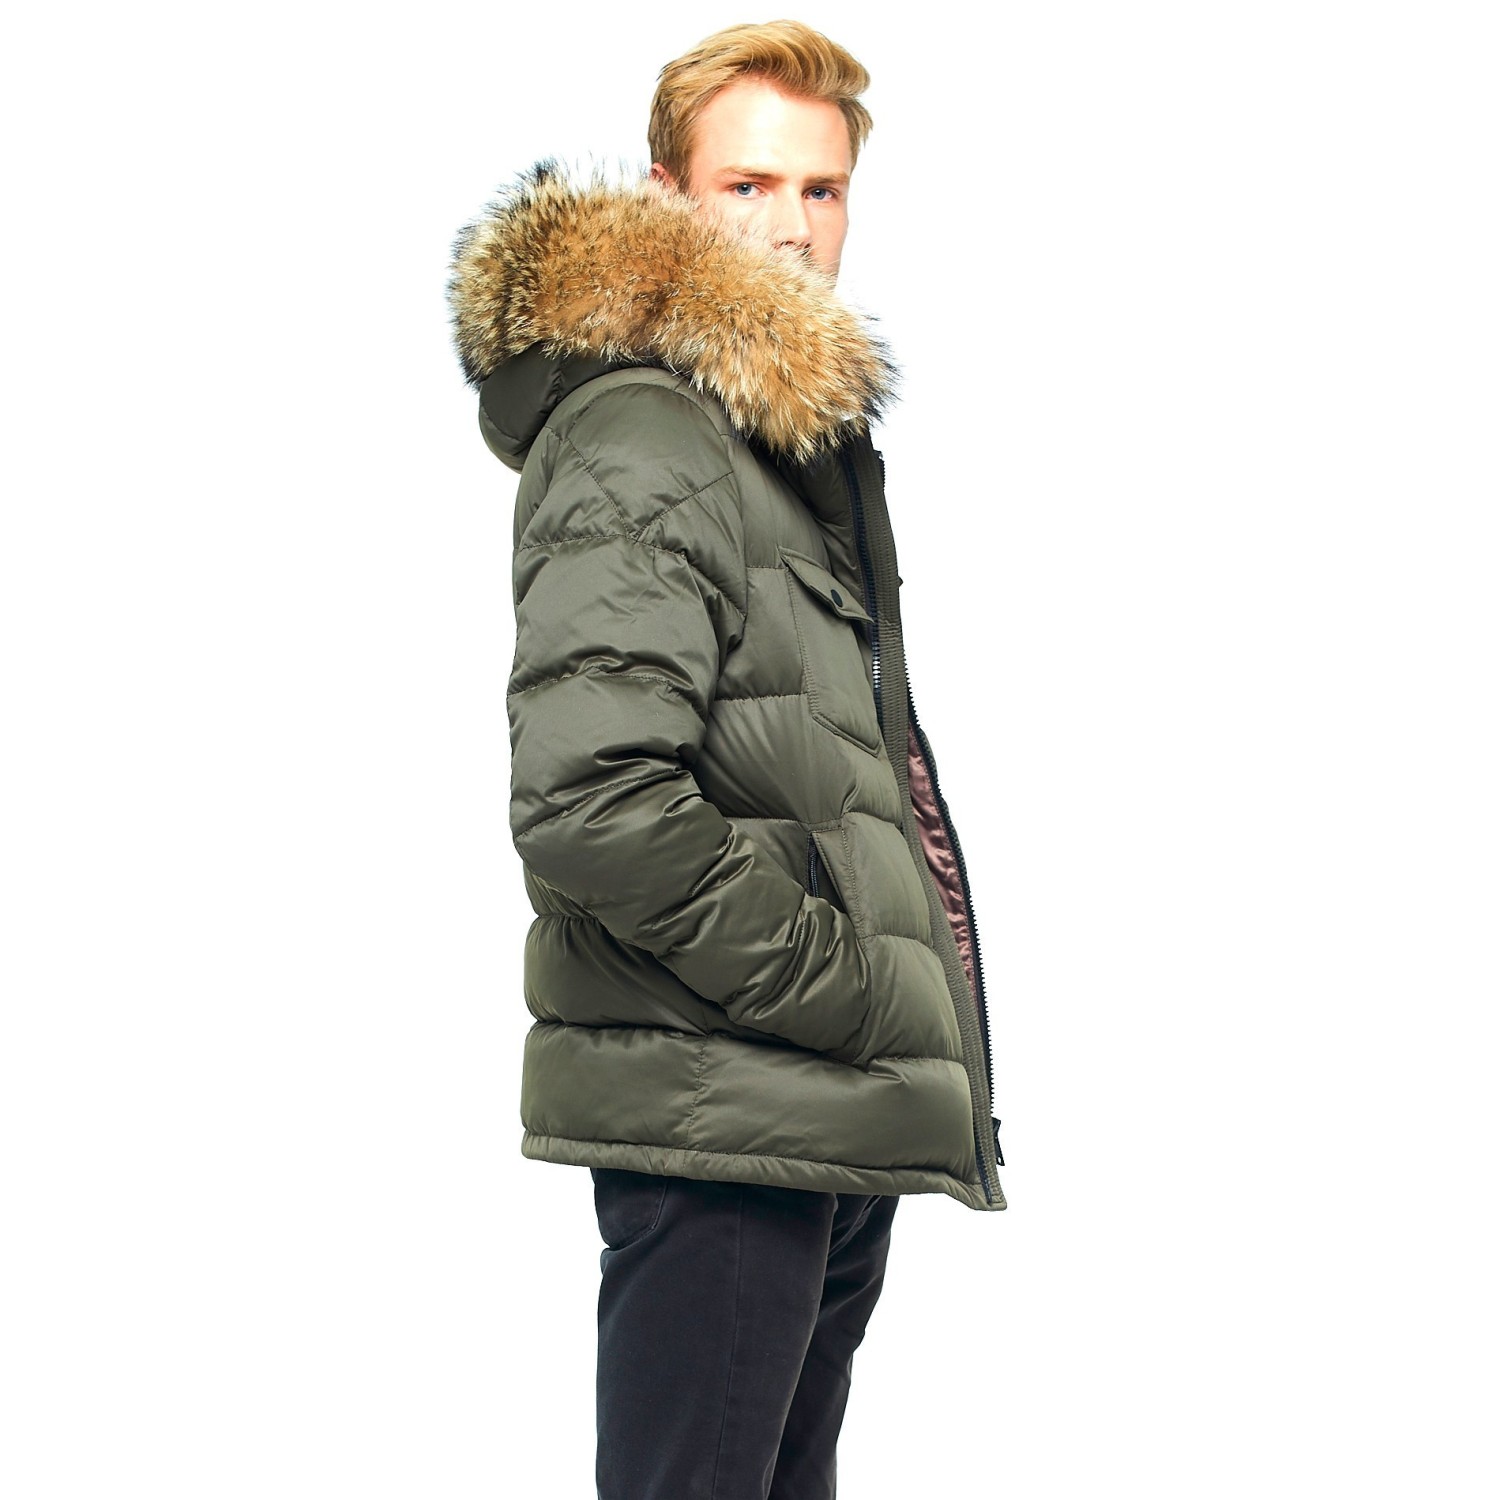 NITAGUT Mens Hooded Faux Fur Lined Warm Coats Outwear Winter Jackets